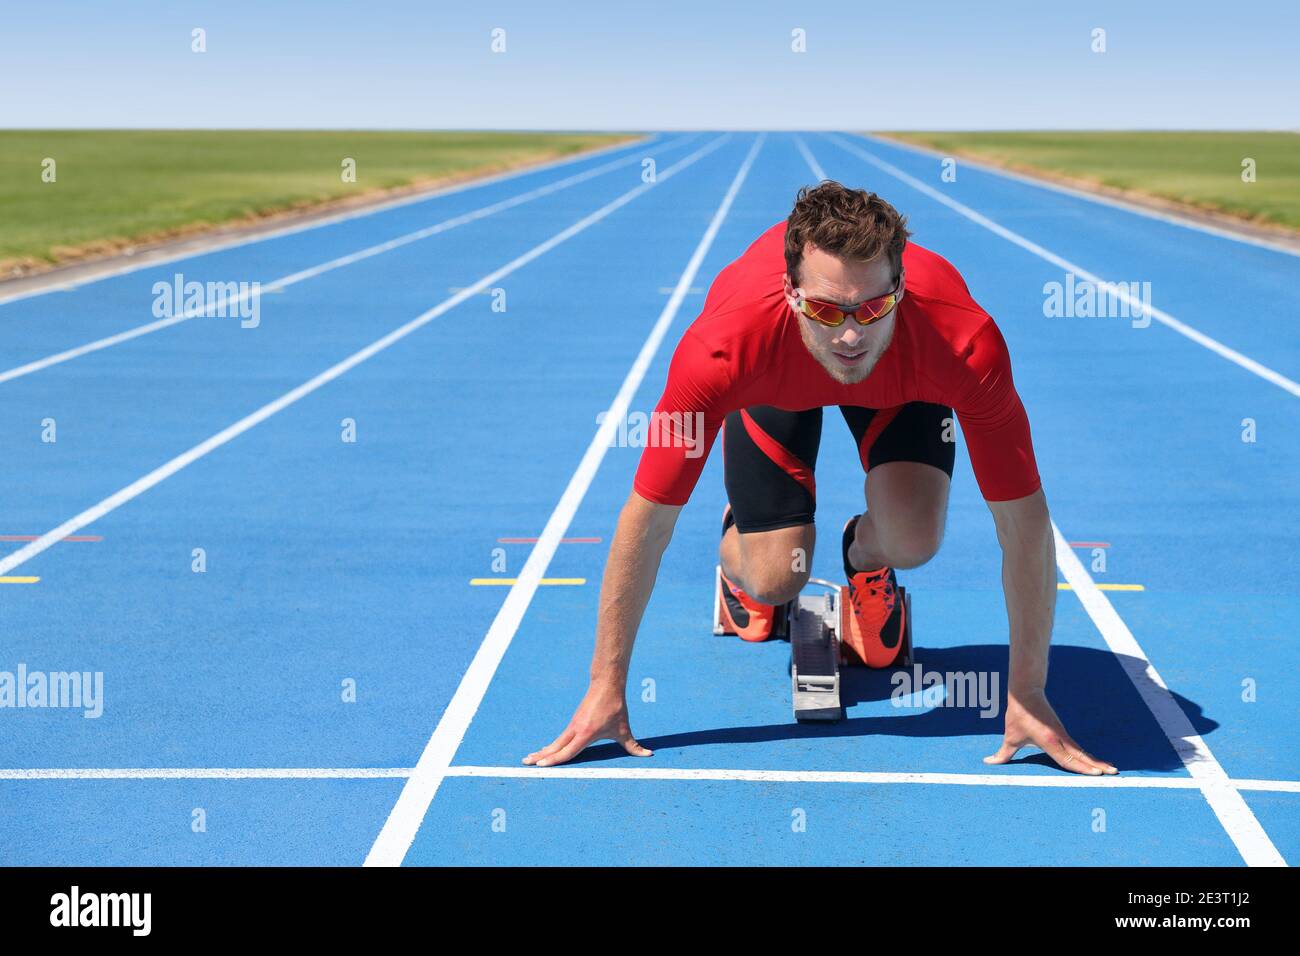 Start zu laufen Athlet Sprinter bereit, auf blauen Spuren in Track and Field Event Rennen an der Startlinie im Outdoor-Stadion laufen. Fokus und Motivation Stockfoto